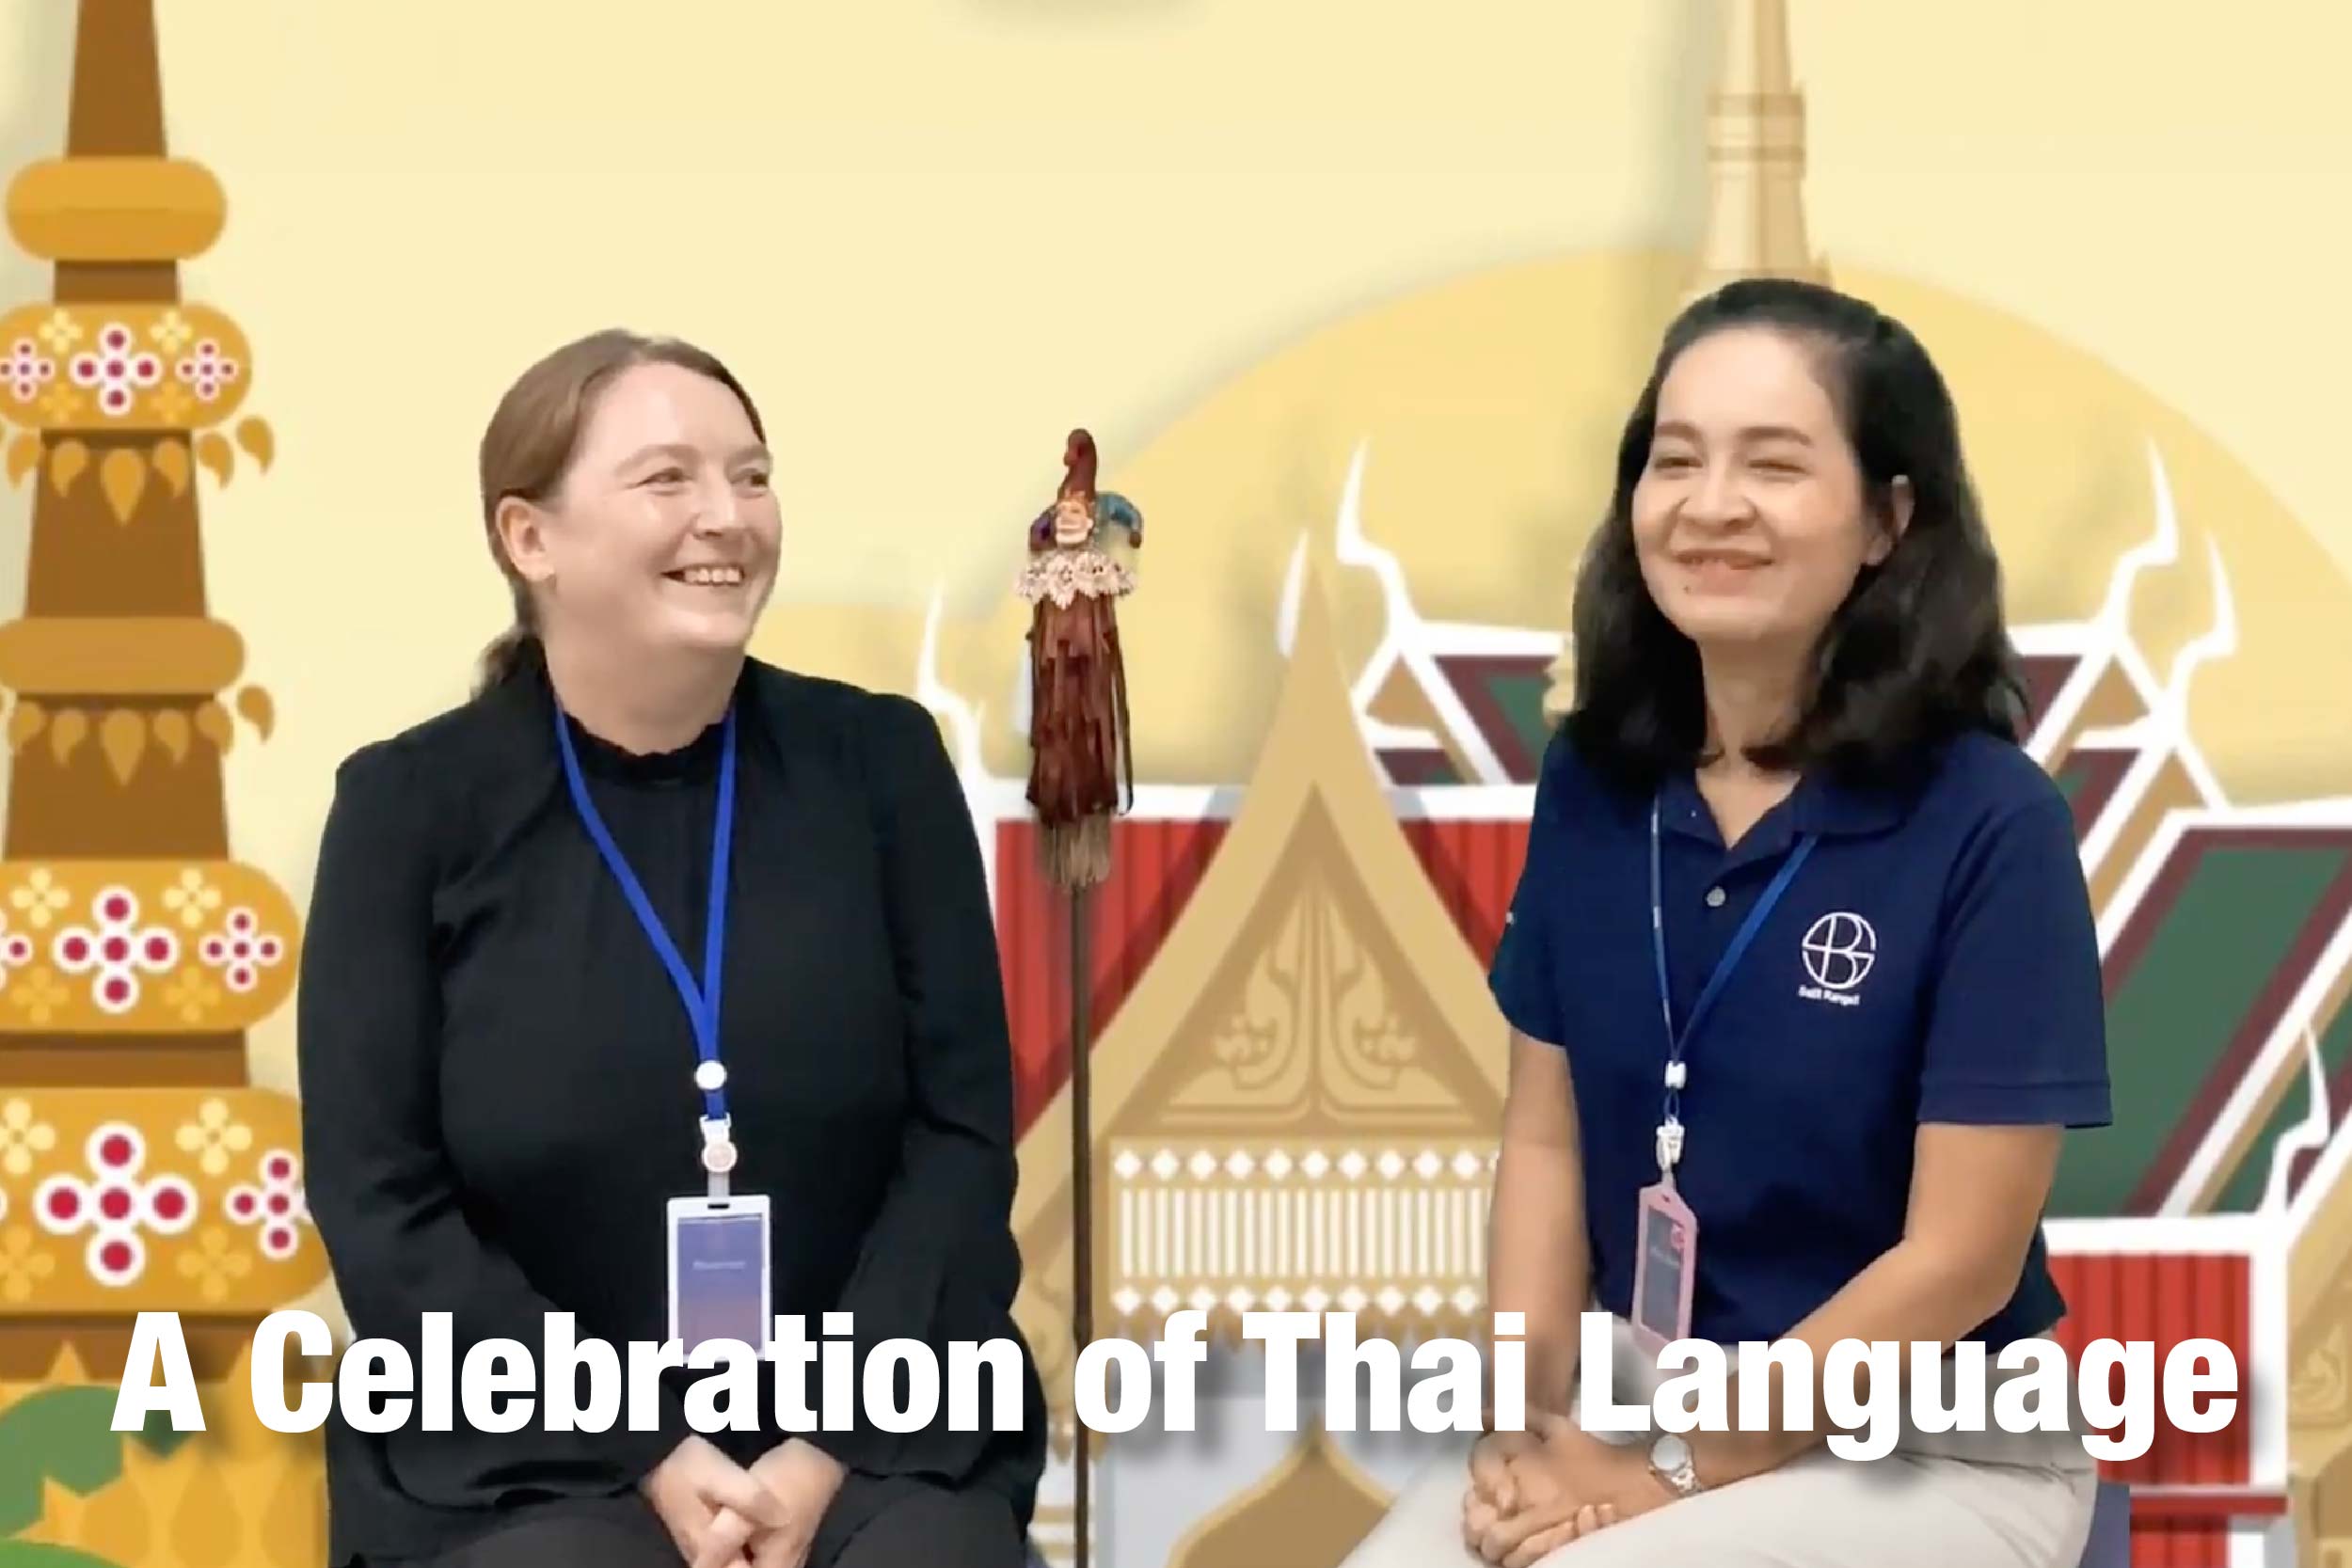 Thai Language Day